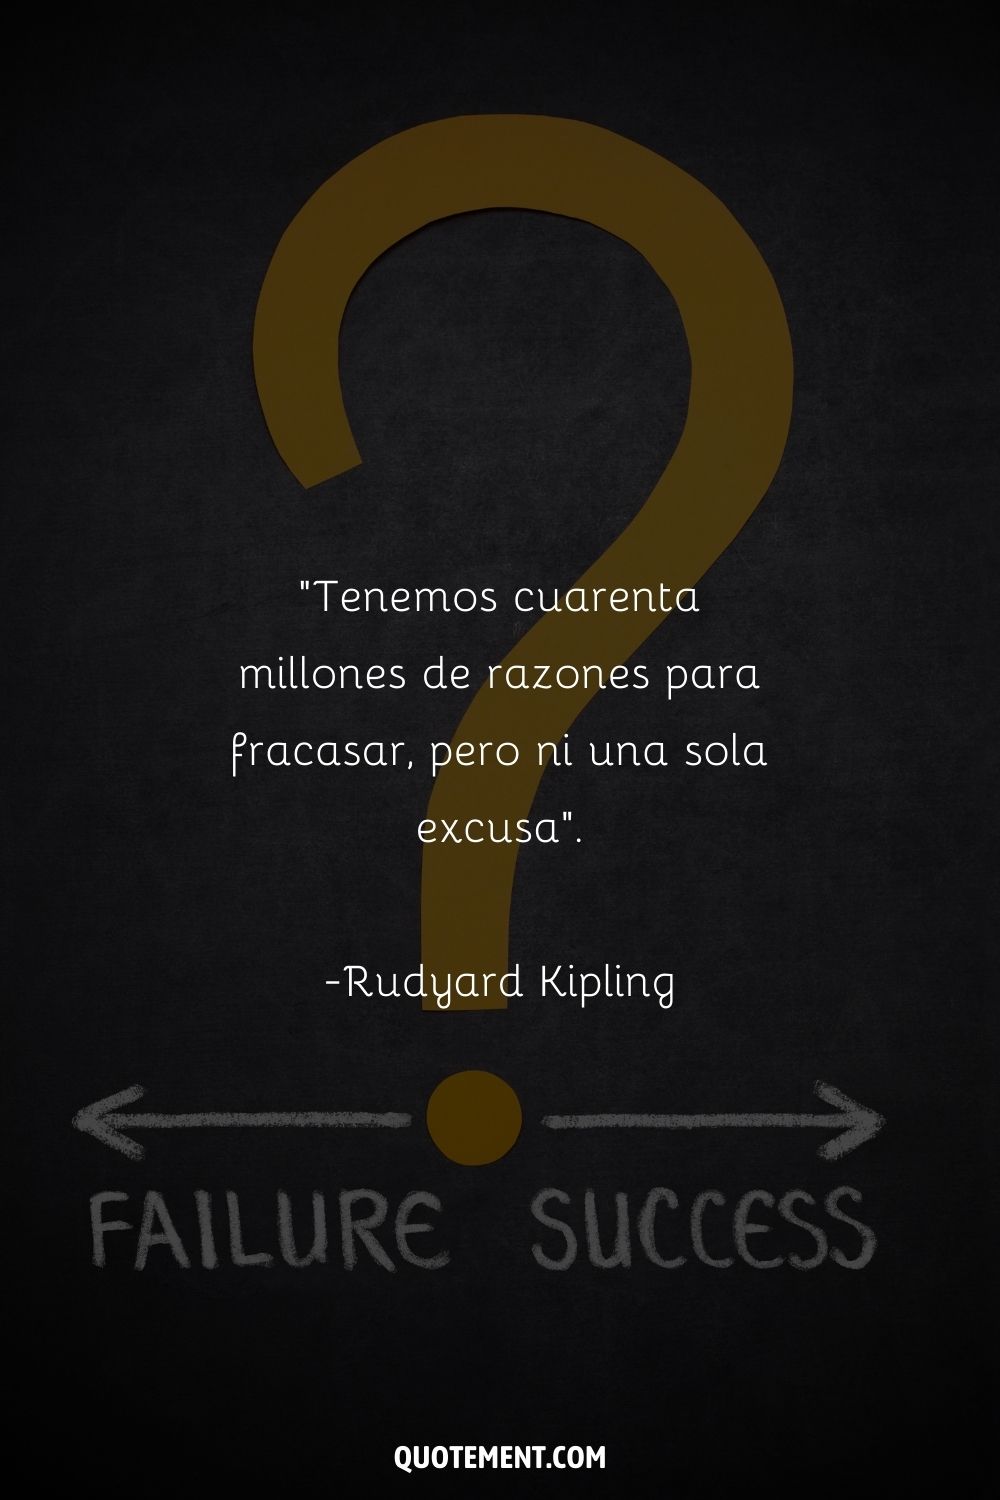 "Tenemos cuarenta millones de razones para fracasar, pero ni una sola excusa". - Rudyard Kipling